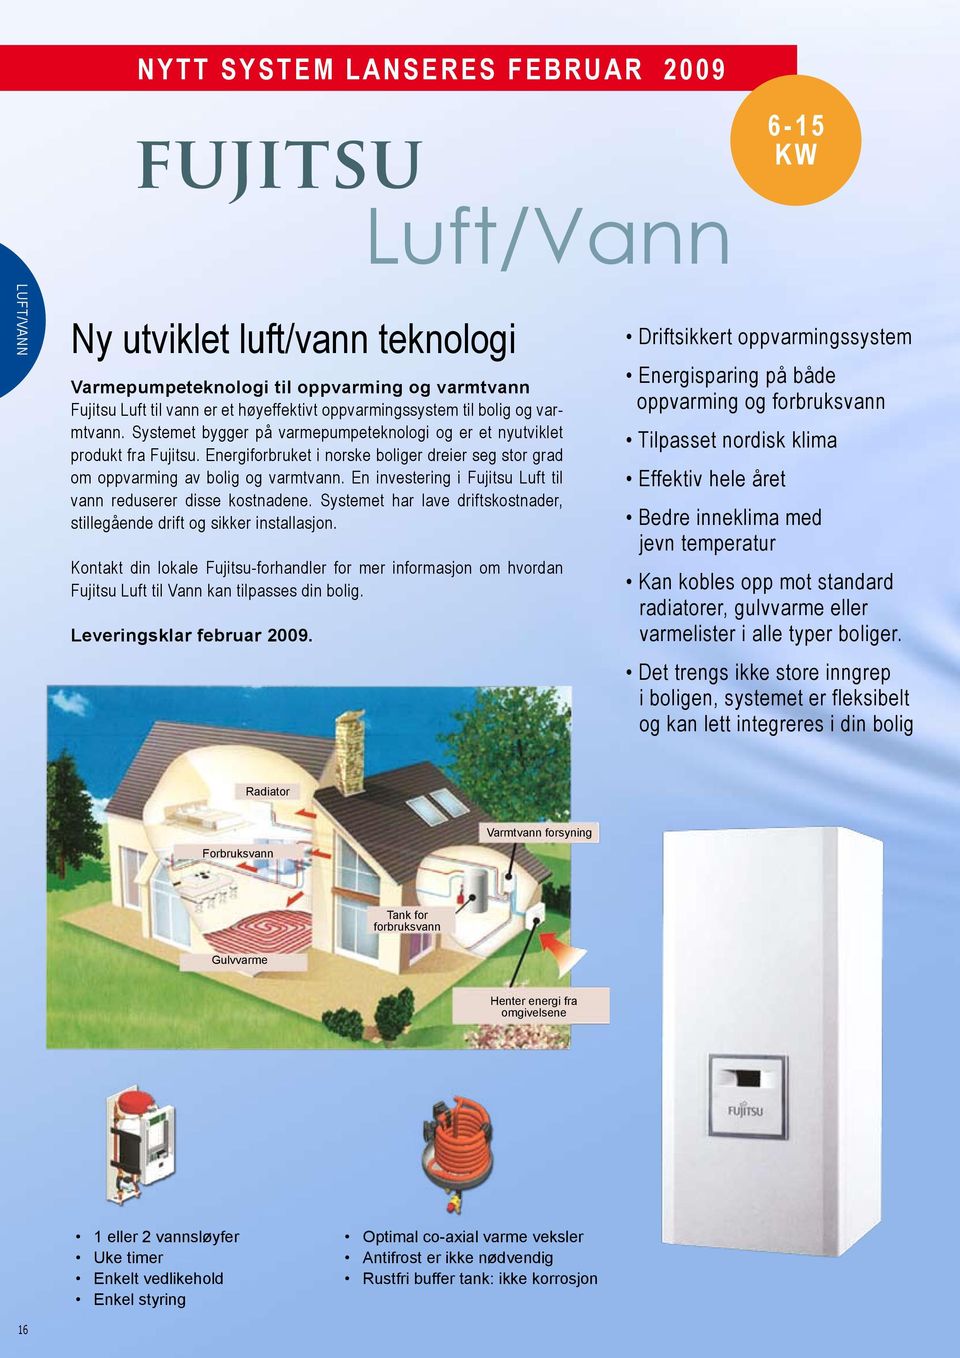 Energiforbruket i norske boliger dreier seg stor grad om oppvarming av bolig og varmtvann. En investering i Fujitsu Luft til vann reduserer disse kostnadene.